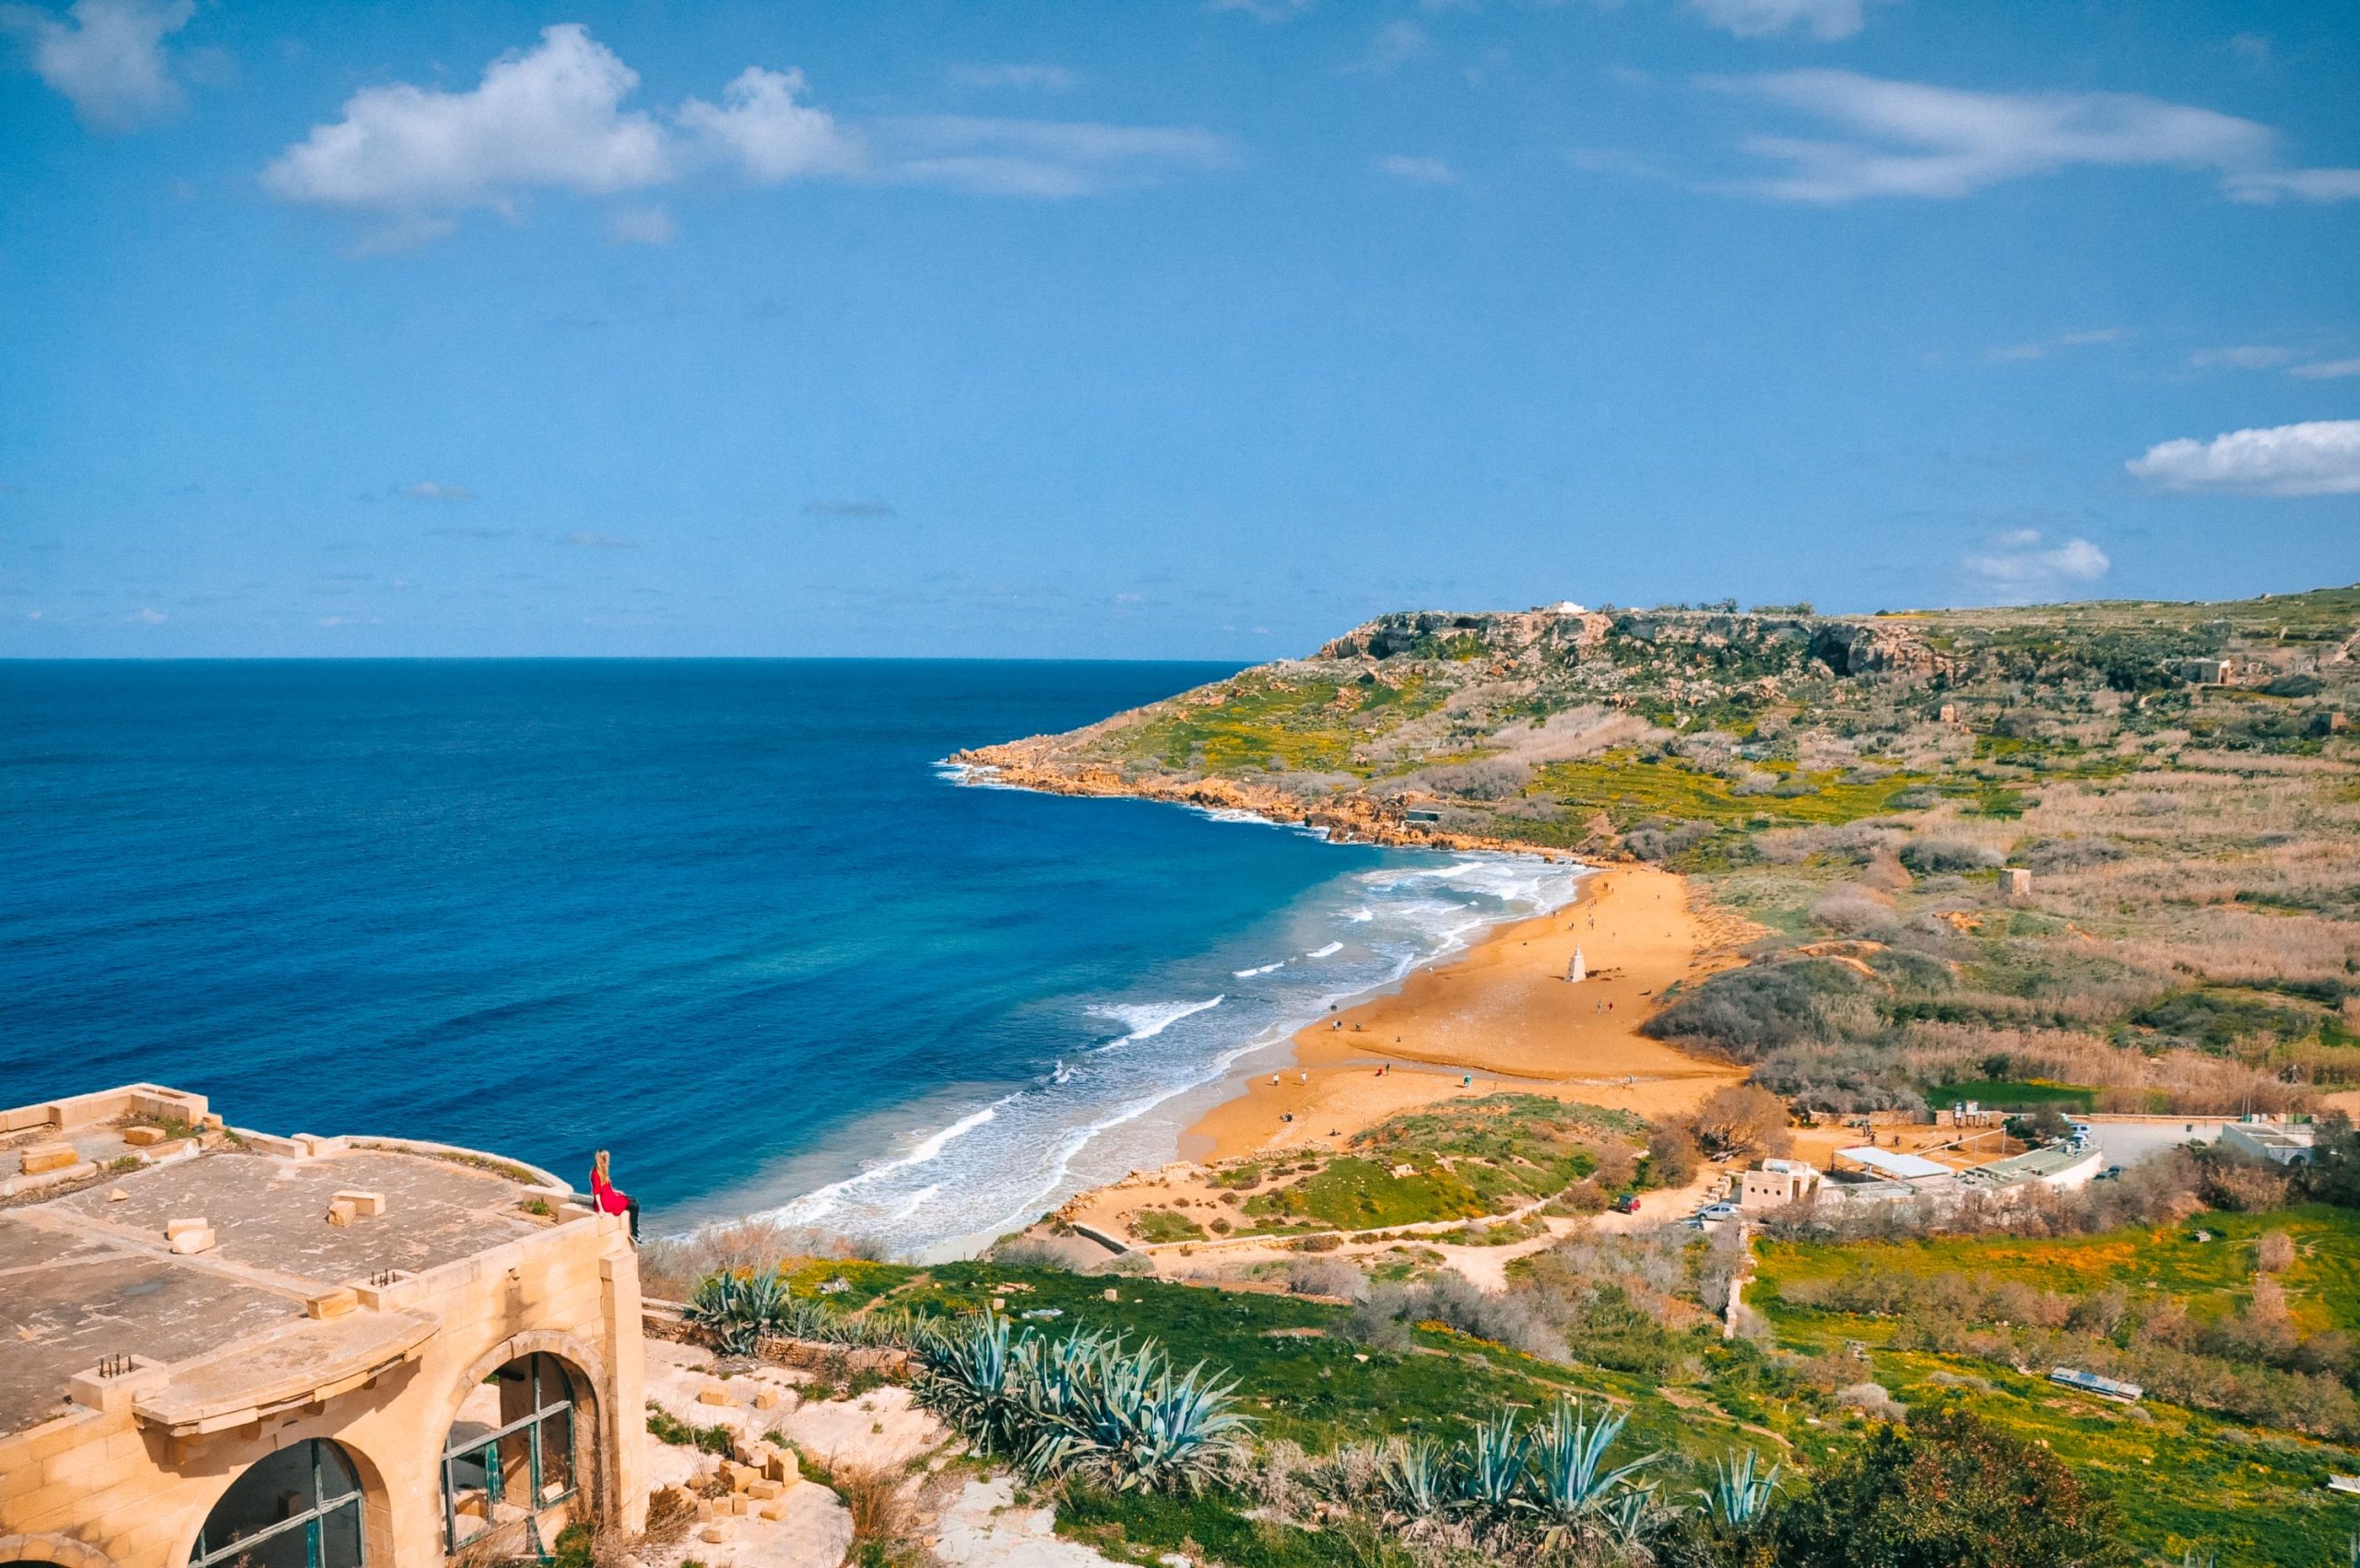 Jegyespárok, kulináris kalandorok és történelembúvárok: Gozo, Málta testvérszigete mindenkit vár, és neked is bakancslistára kell tűznöd